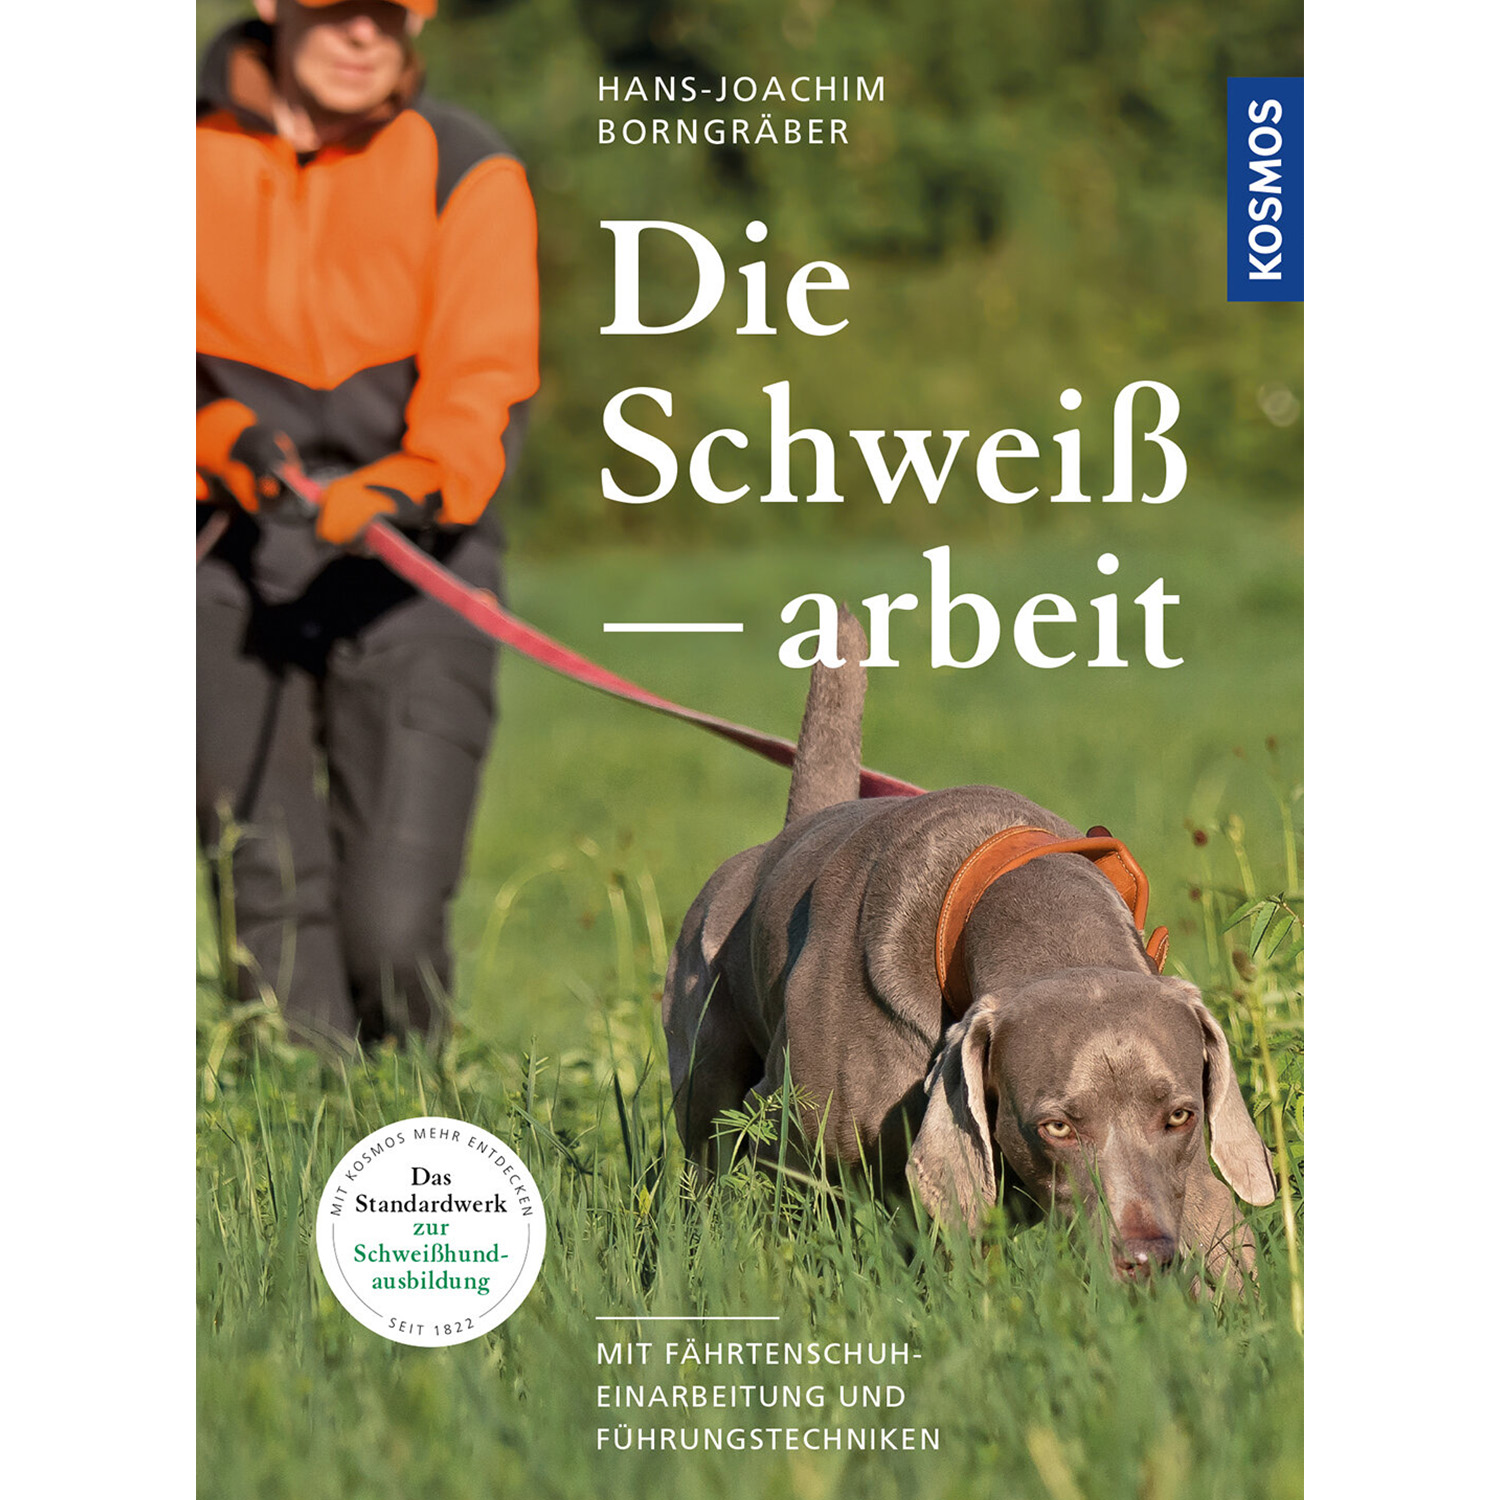 Die Schweißarbeit - Buch - Hans-Joachim Borngräber - Jagdausrüstung